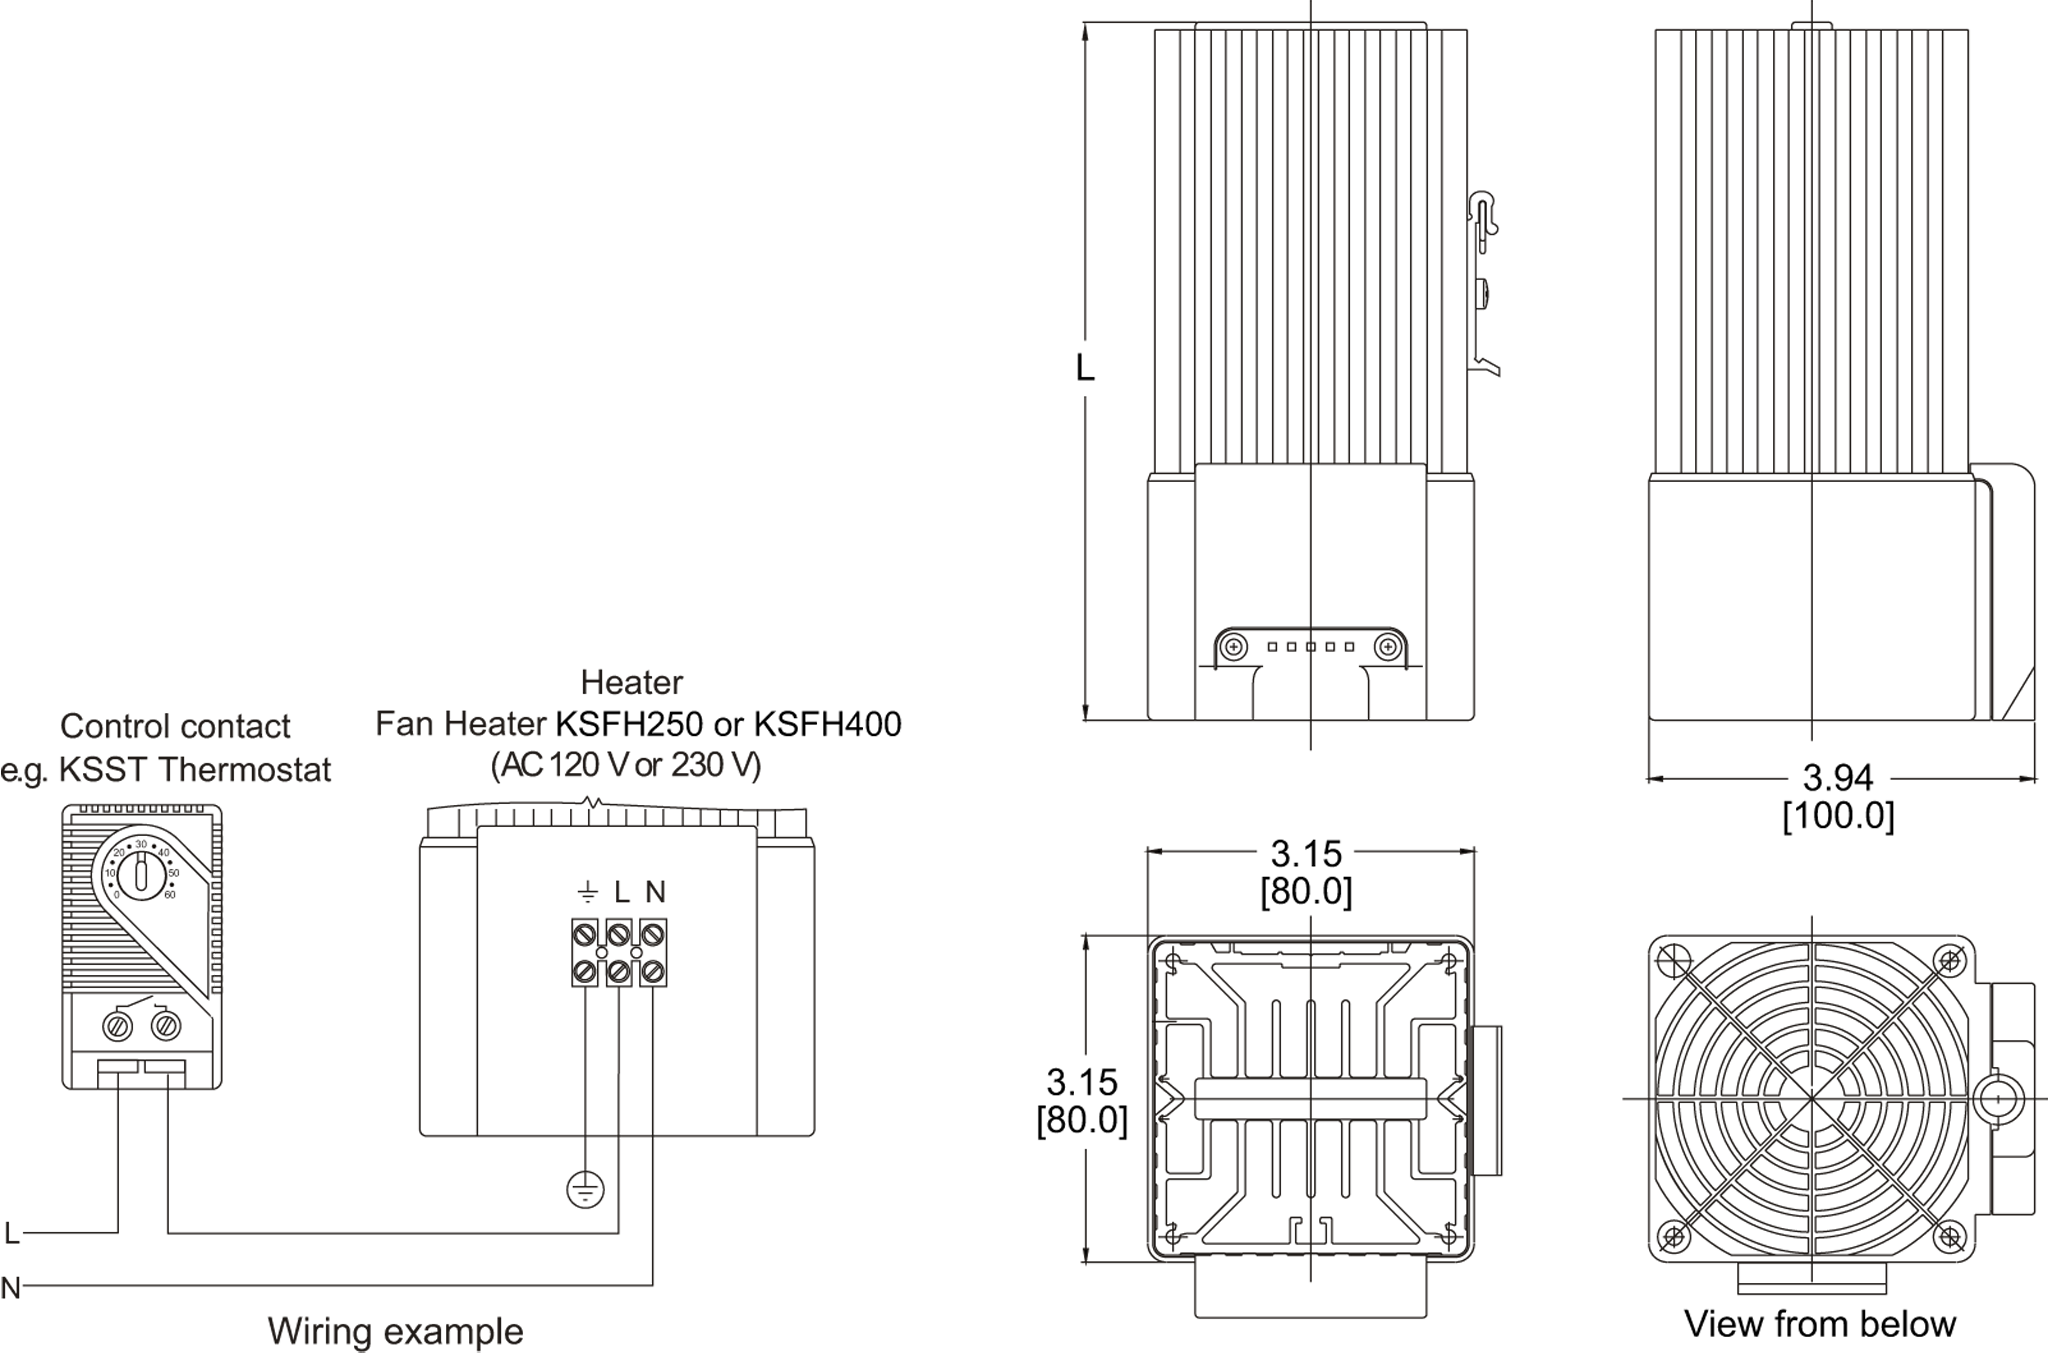 Fan Heater General Arrangement Drawing